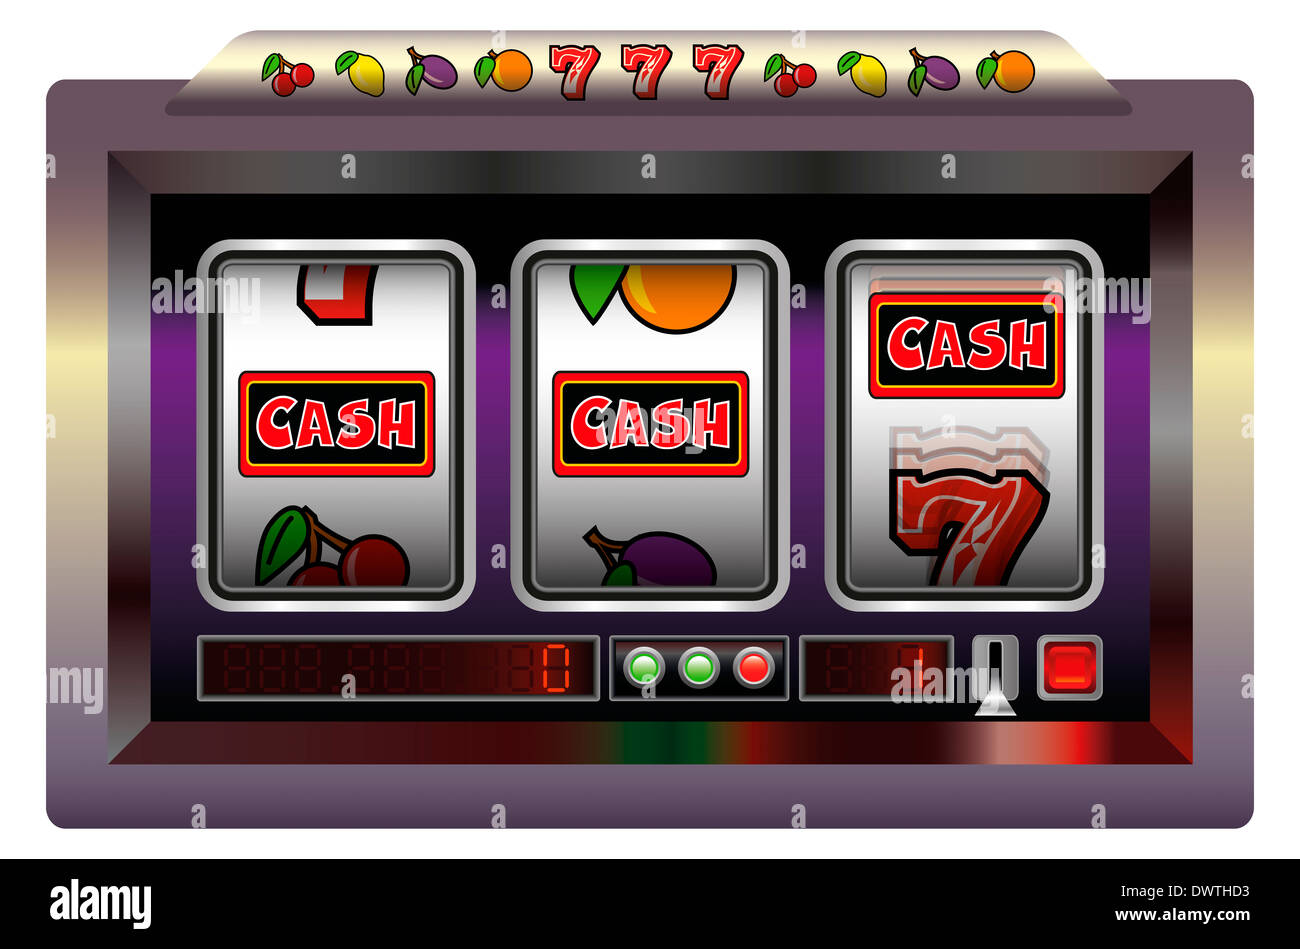 Beispiel für ein Spielautomat mit drei Walzen, Spielautomaten Symbole und der Schriftzug CASH. Stockfoto